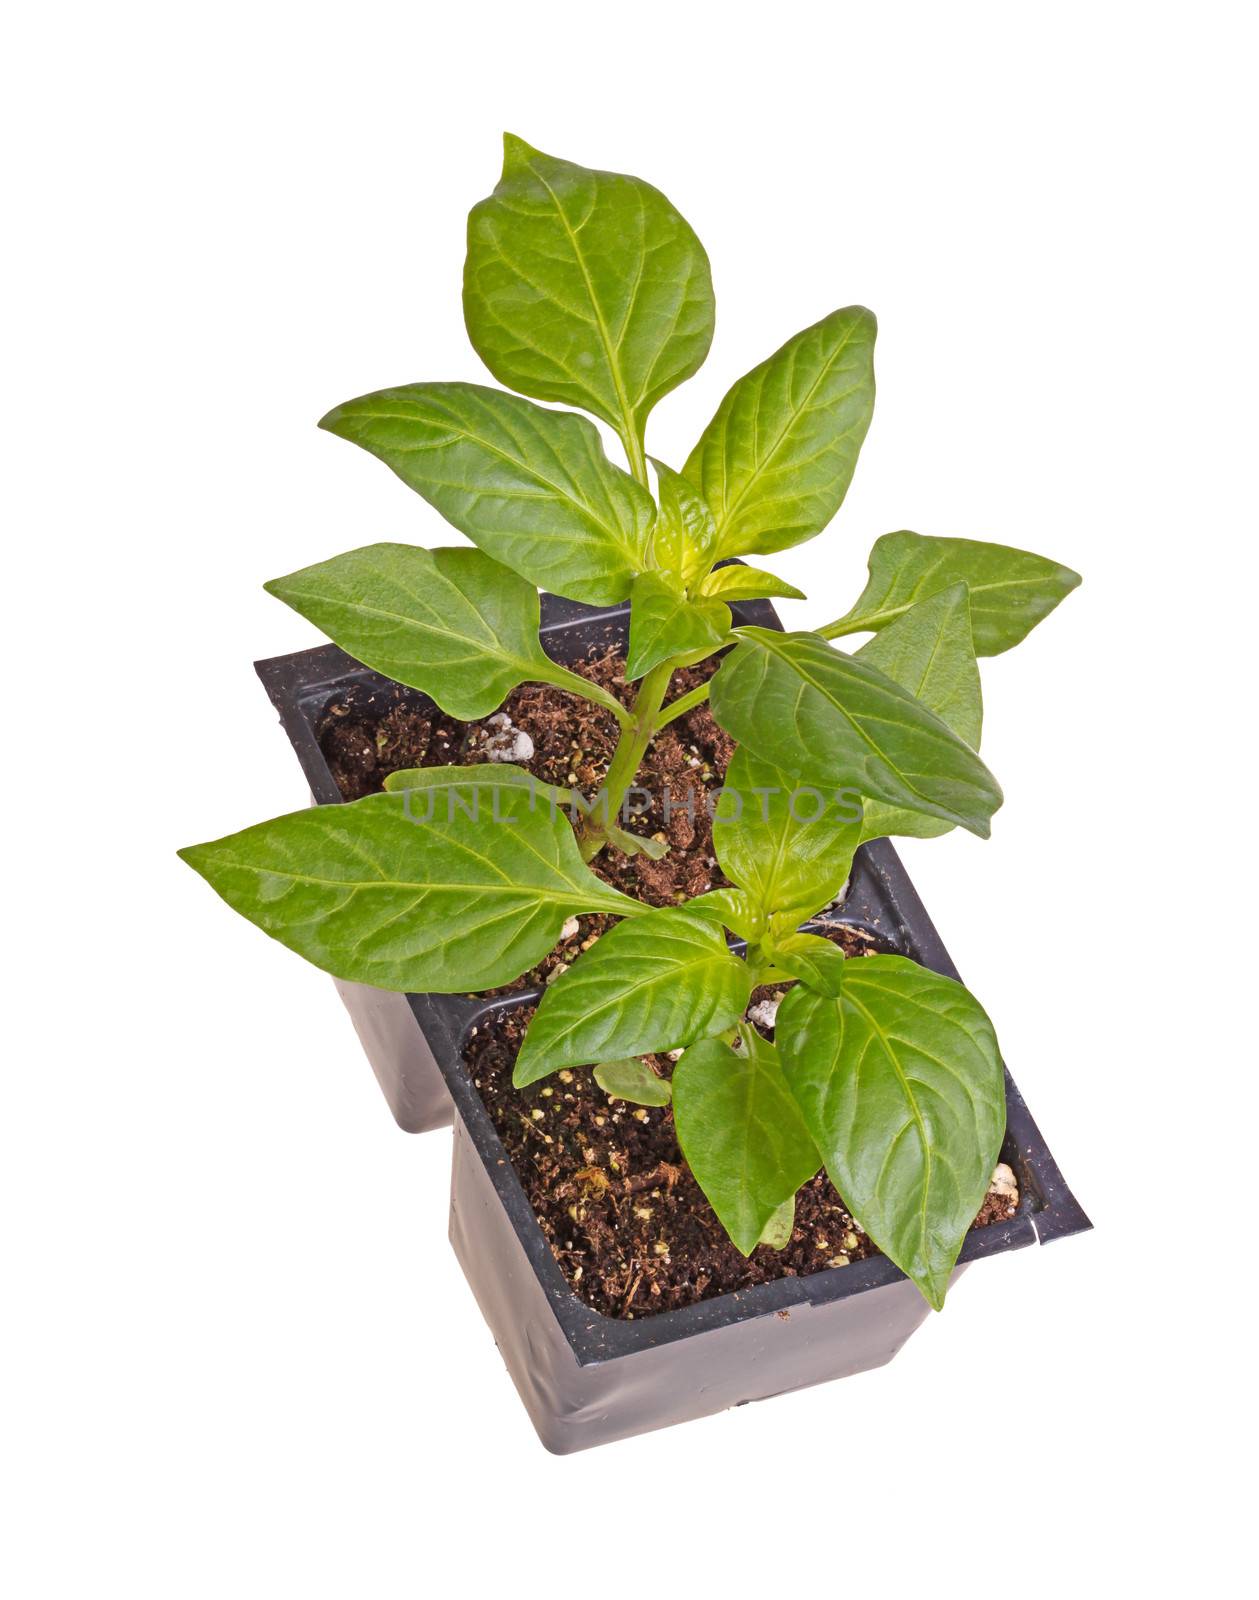 Two seedlings of sweet bell pepper plants by sgoodwin4813